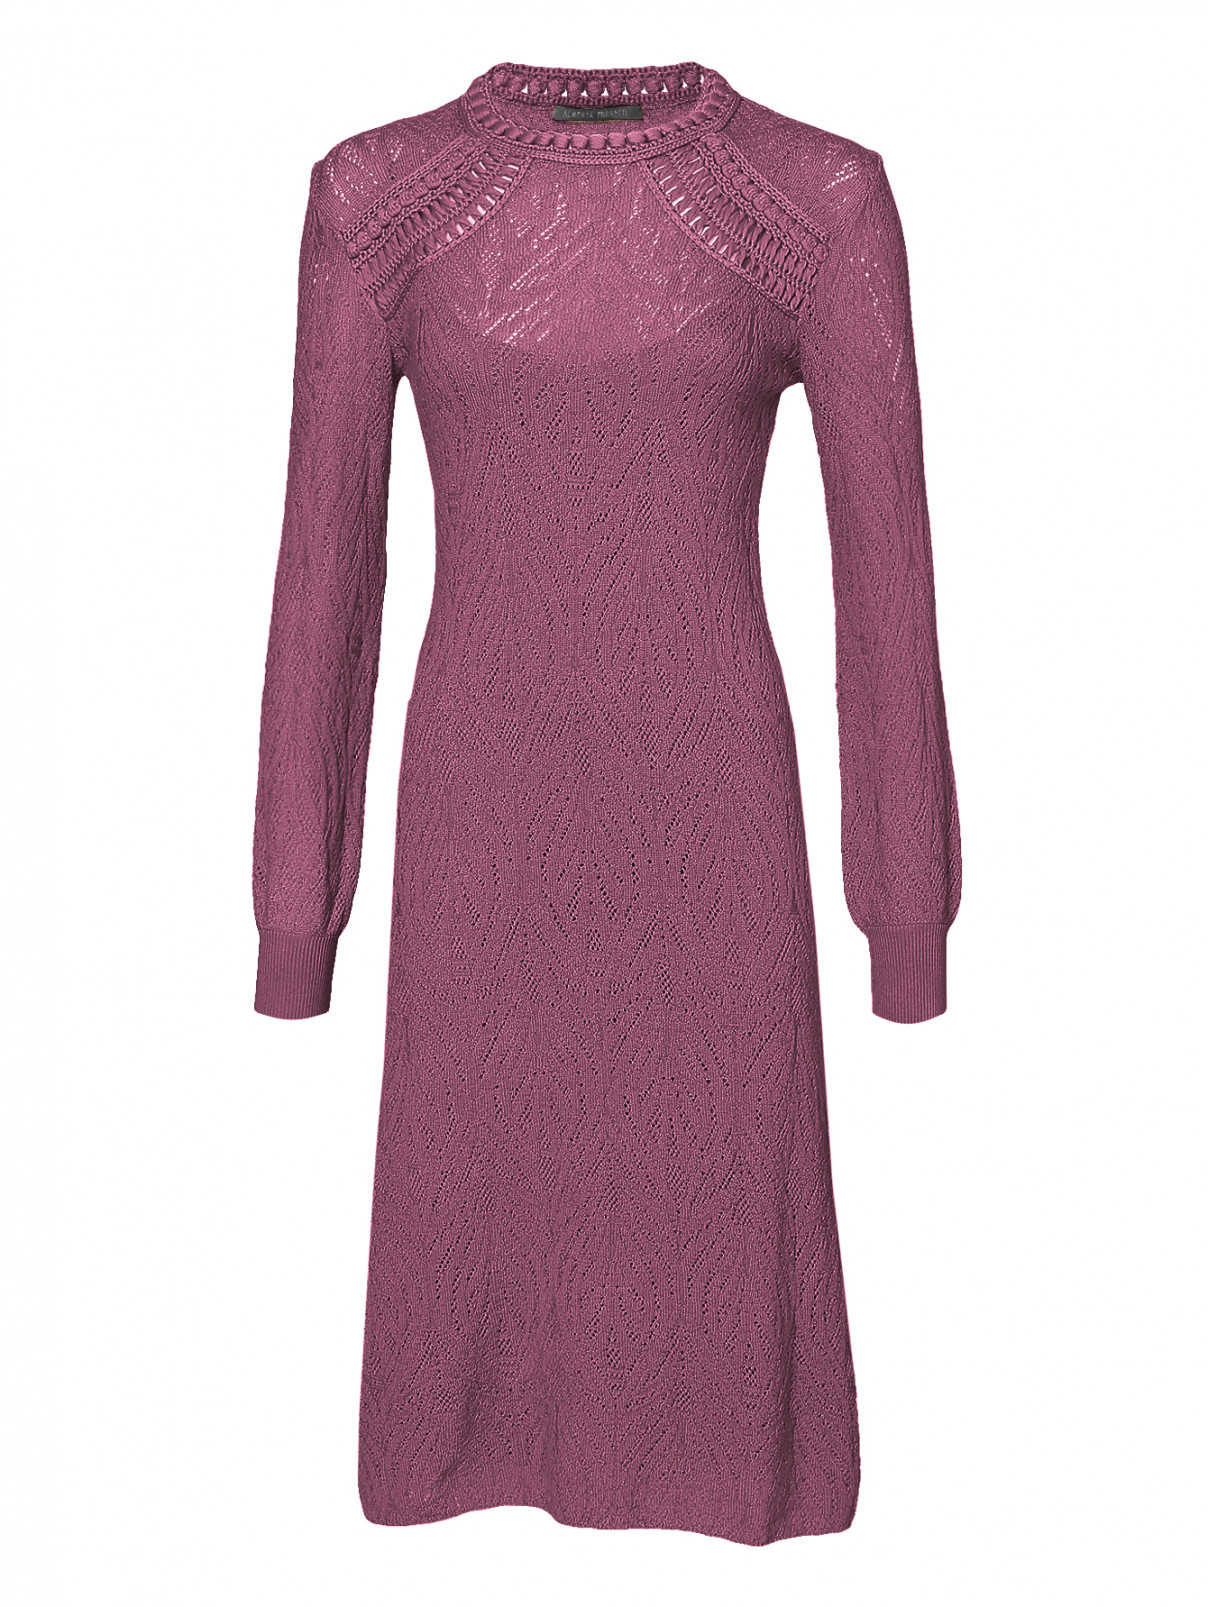 Трикотажное платье из шерсти ажурной вязки Alberta Ferretti  –  Общий вид  – Цвет:  Фиолетовый